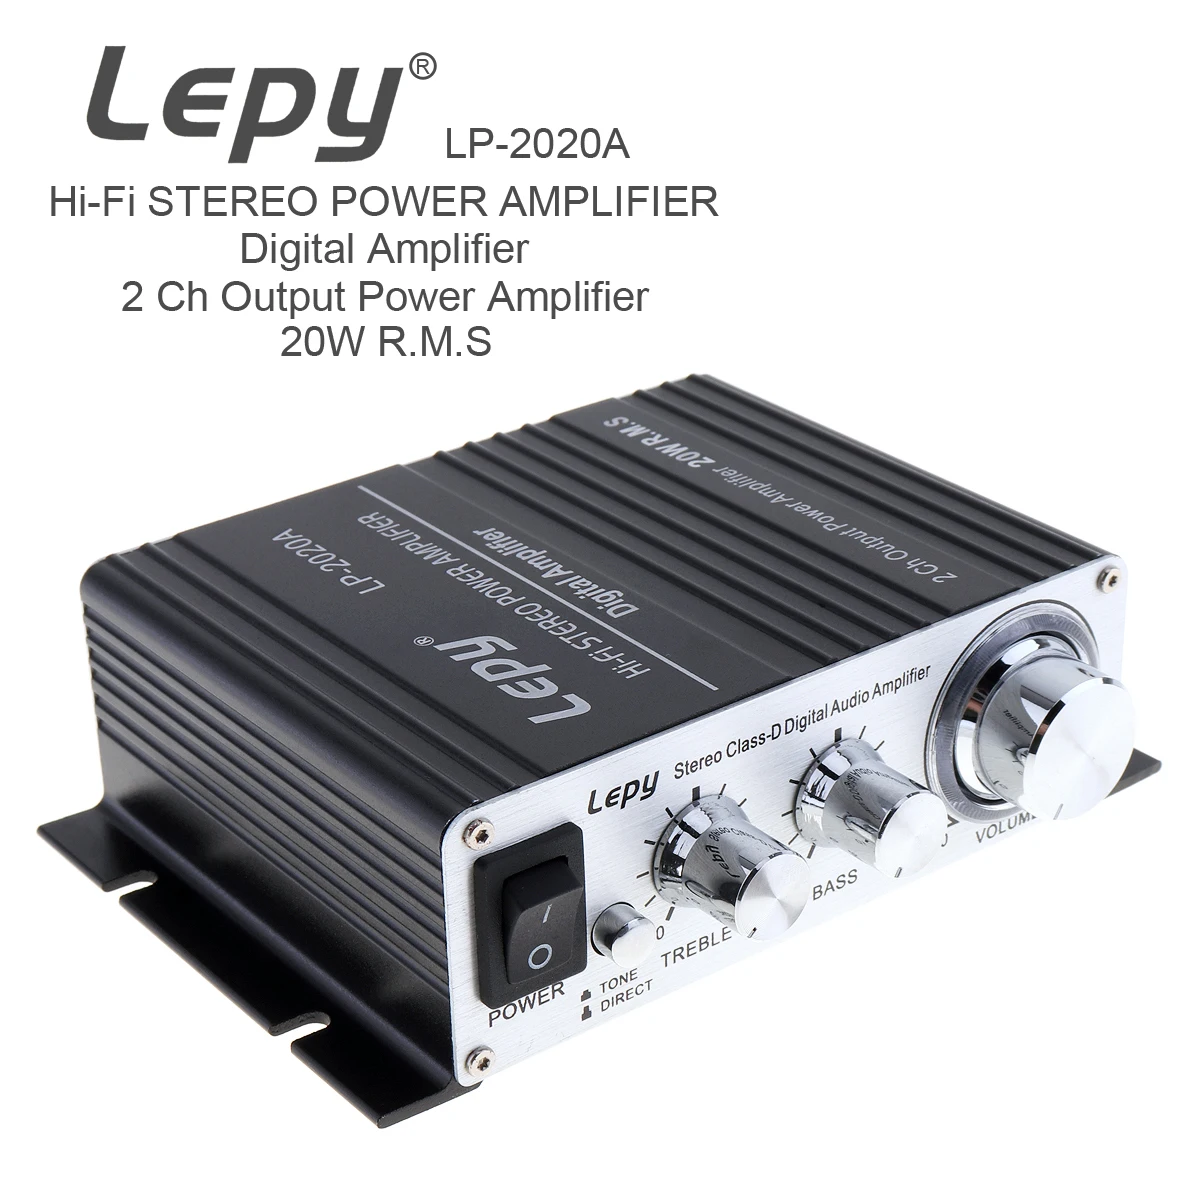 

Распродажа, цифровой аудиоусилитель LP-2020A 20Wx 2 2CH Stereo Class-D, Hi-Fi стерео усилитель мощности с защитой от перегрузки по току